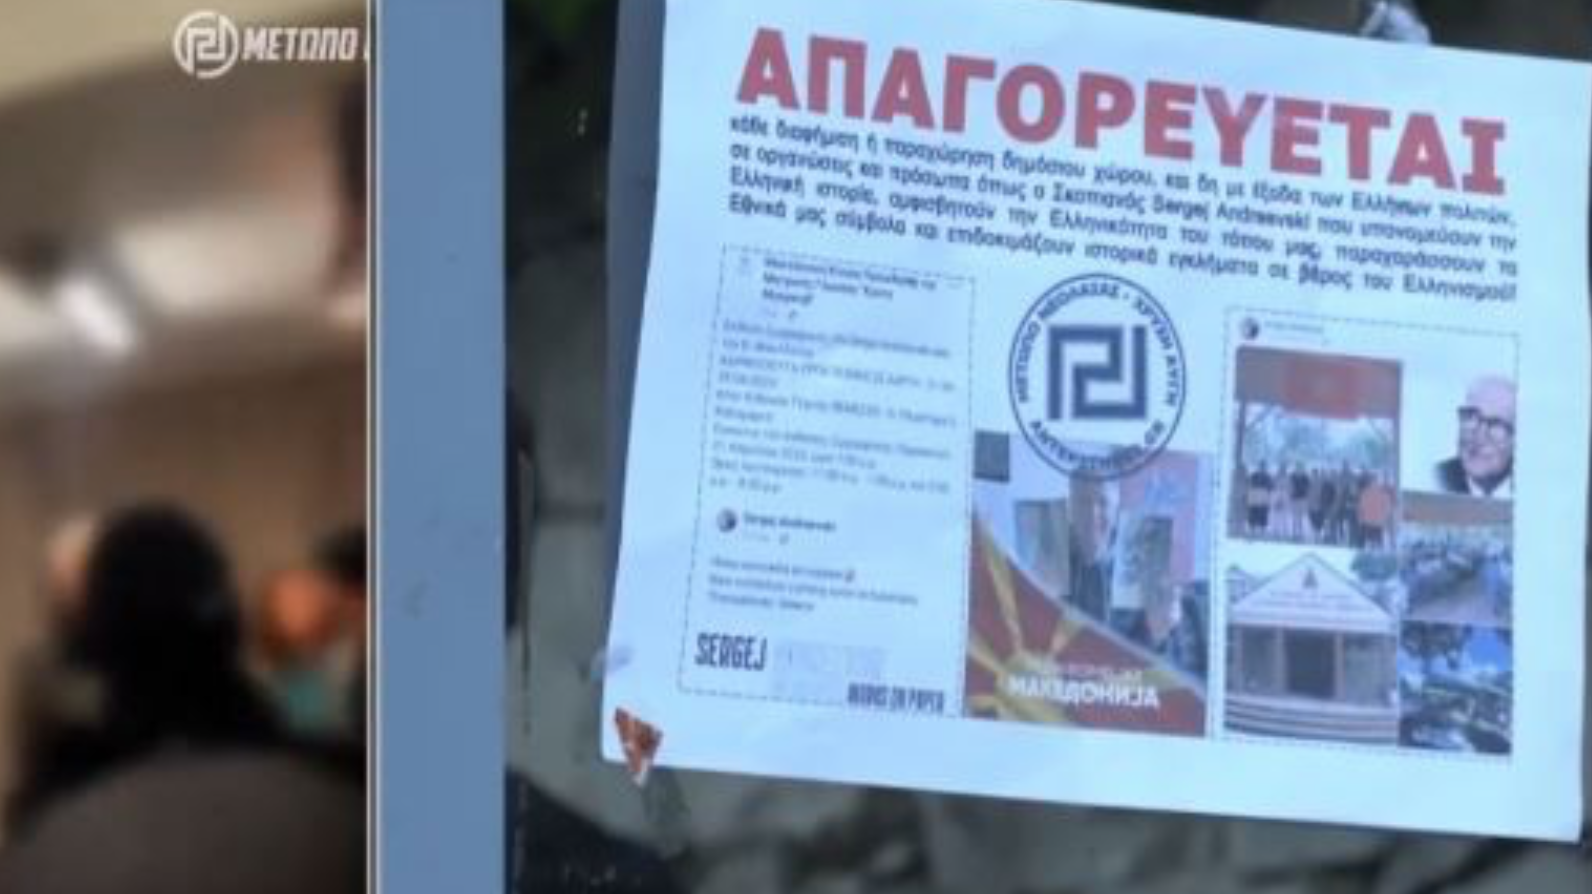 Θεσσαλονίκη: Ταυτοποιήθηκαν άλλοι 6 από την επίθεση Χρυσαυγιτών σε έκθεση καλλιτέχνη από τη βόρεια Μακεδονία